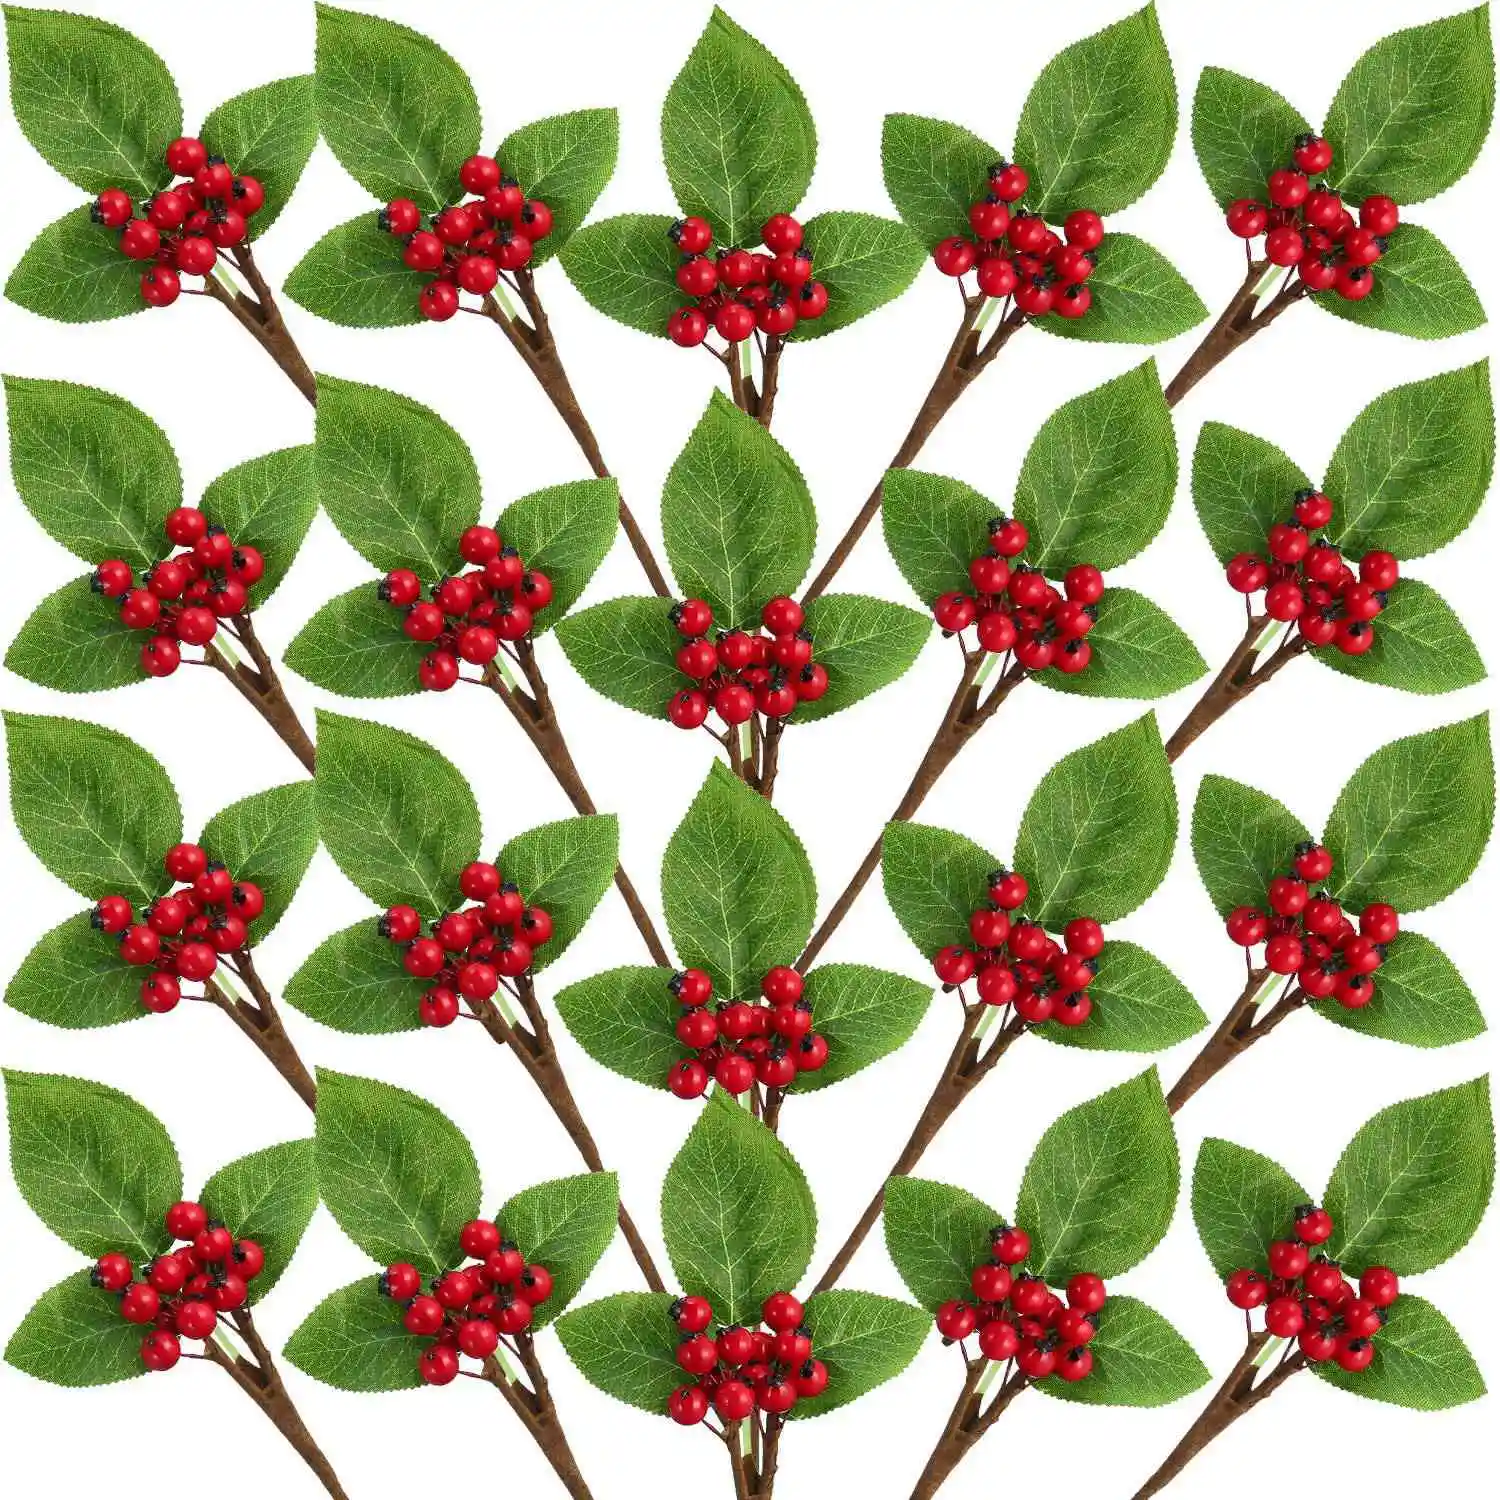 20 Рождественских искусственных ягод в виде веточек, стебельков, гроздь искусственных ягод для украшения рождественской елки и поделок своими руками